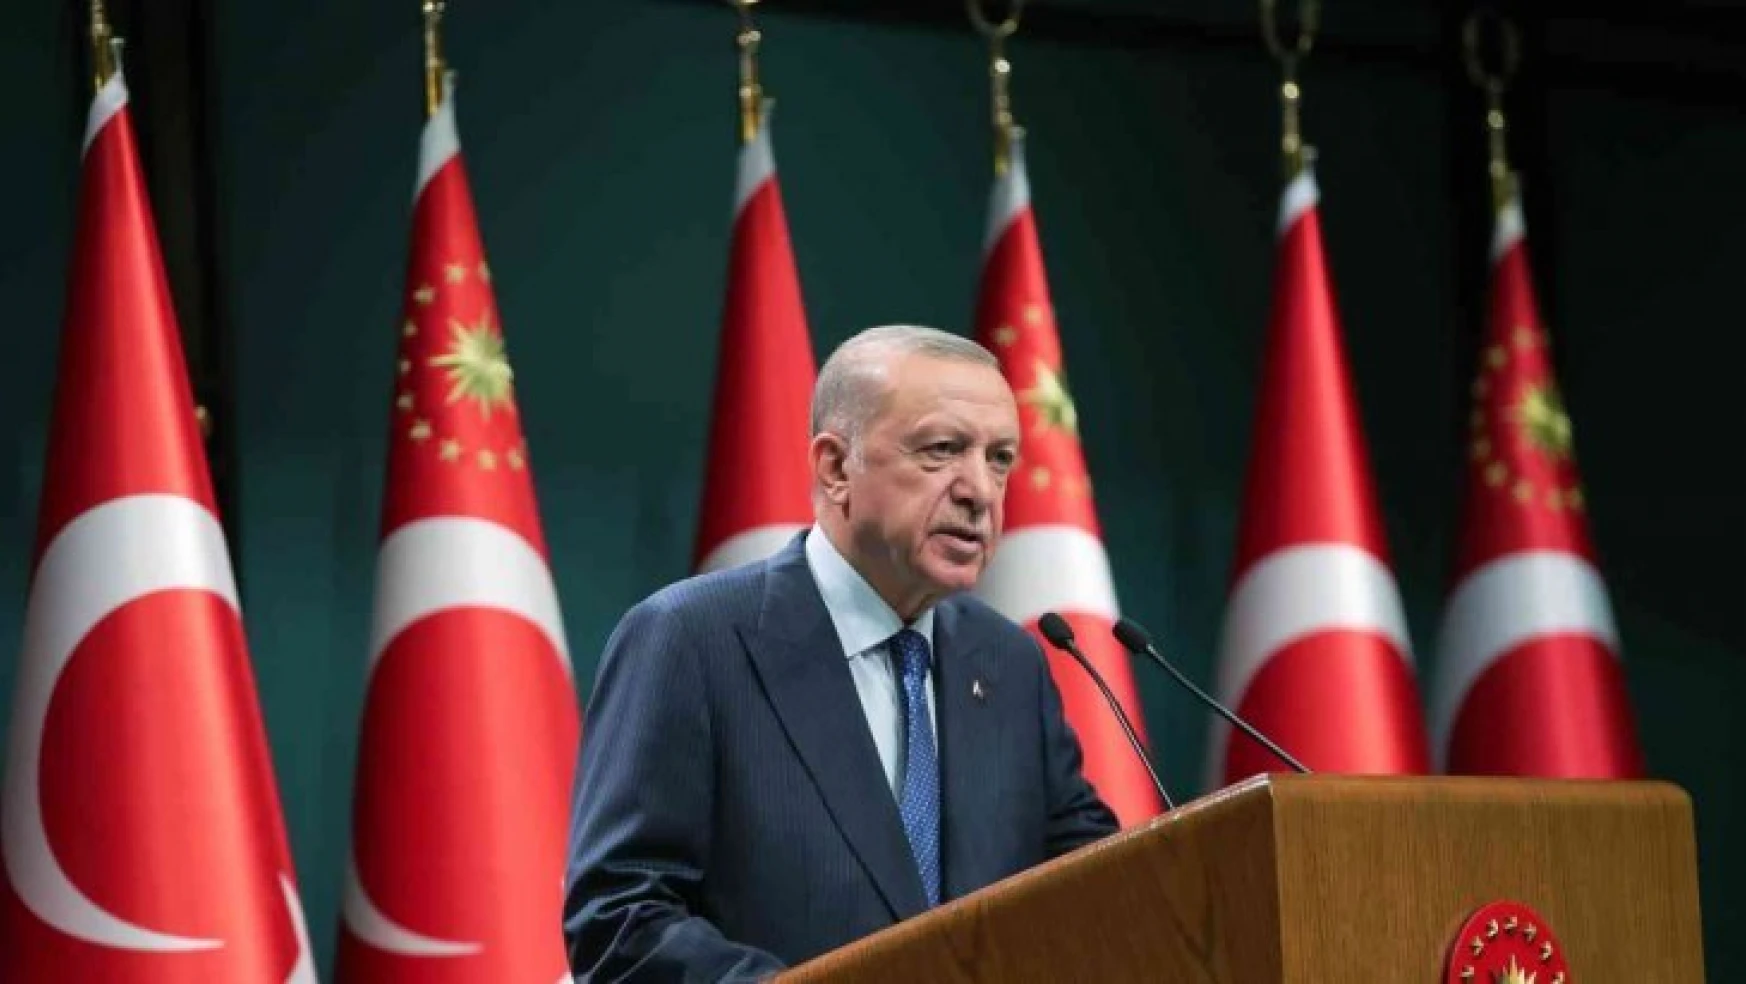 Cumhurbaşkanı Erdoğan'dan KYK kredisi müjdesi